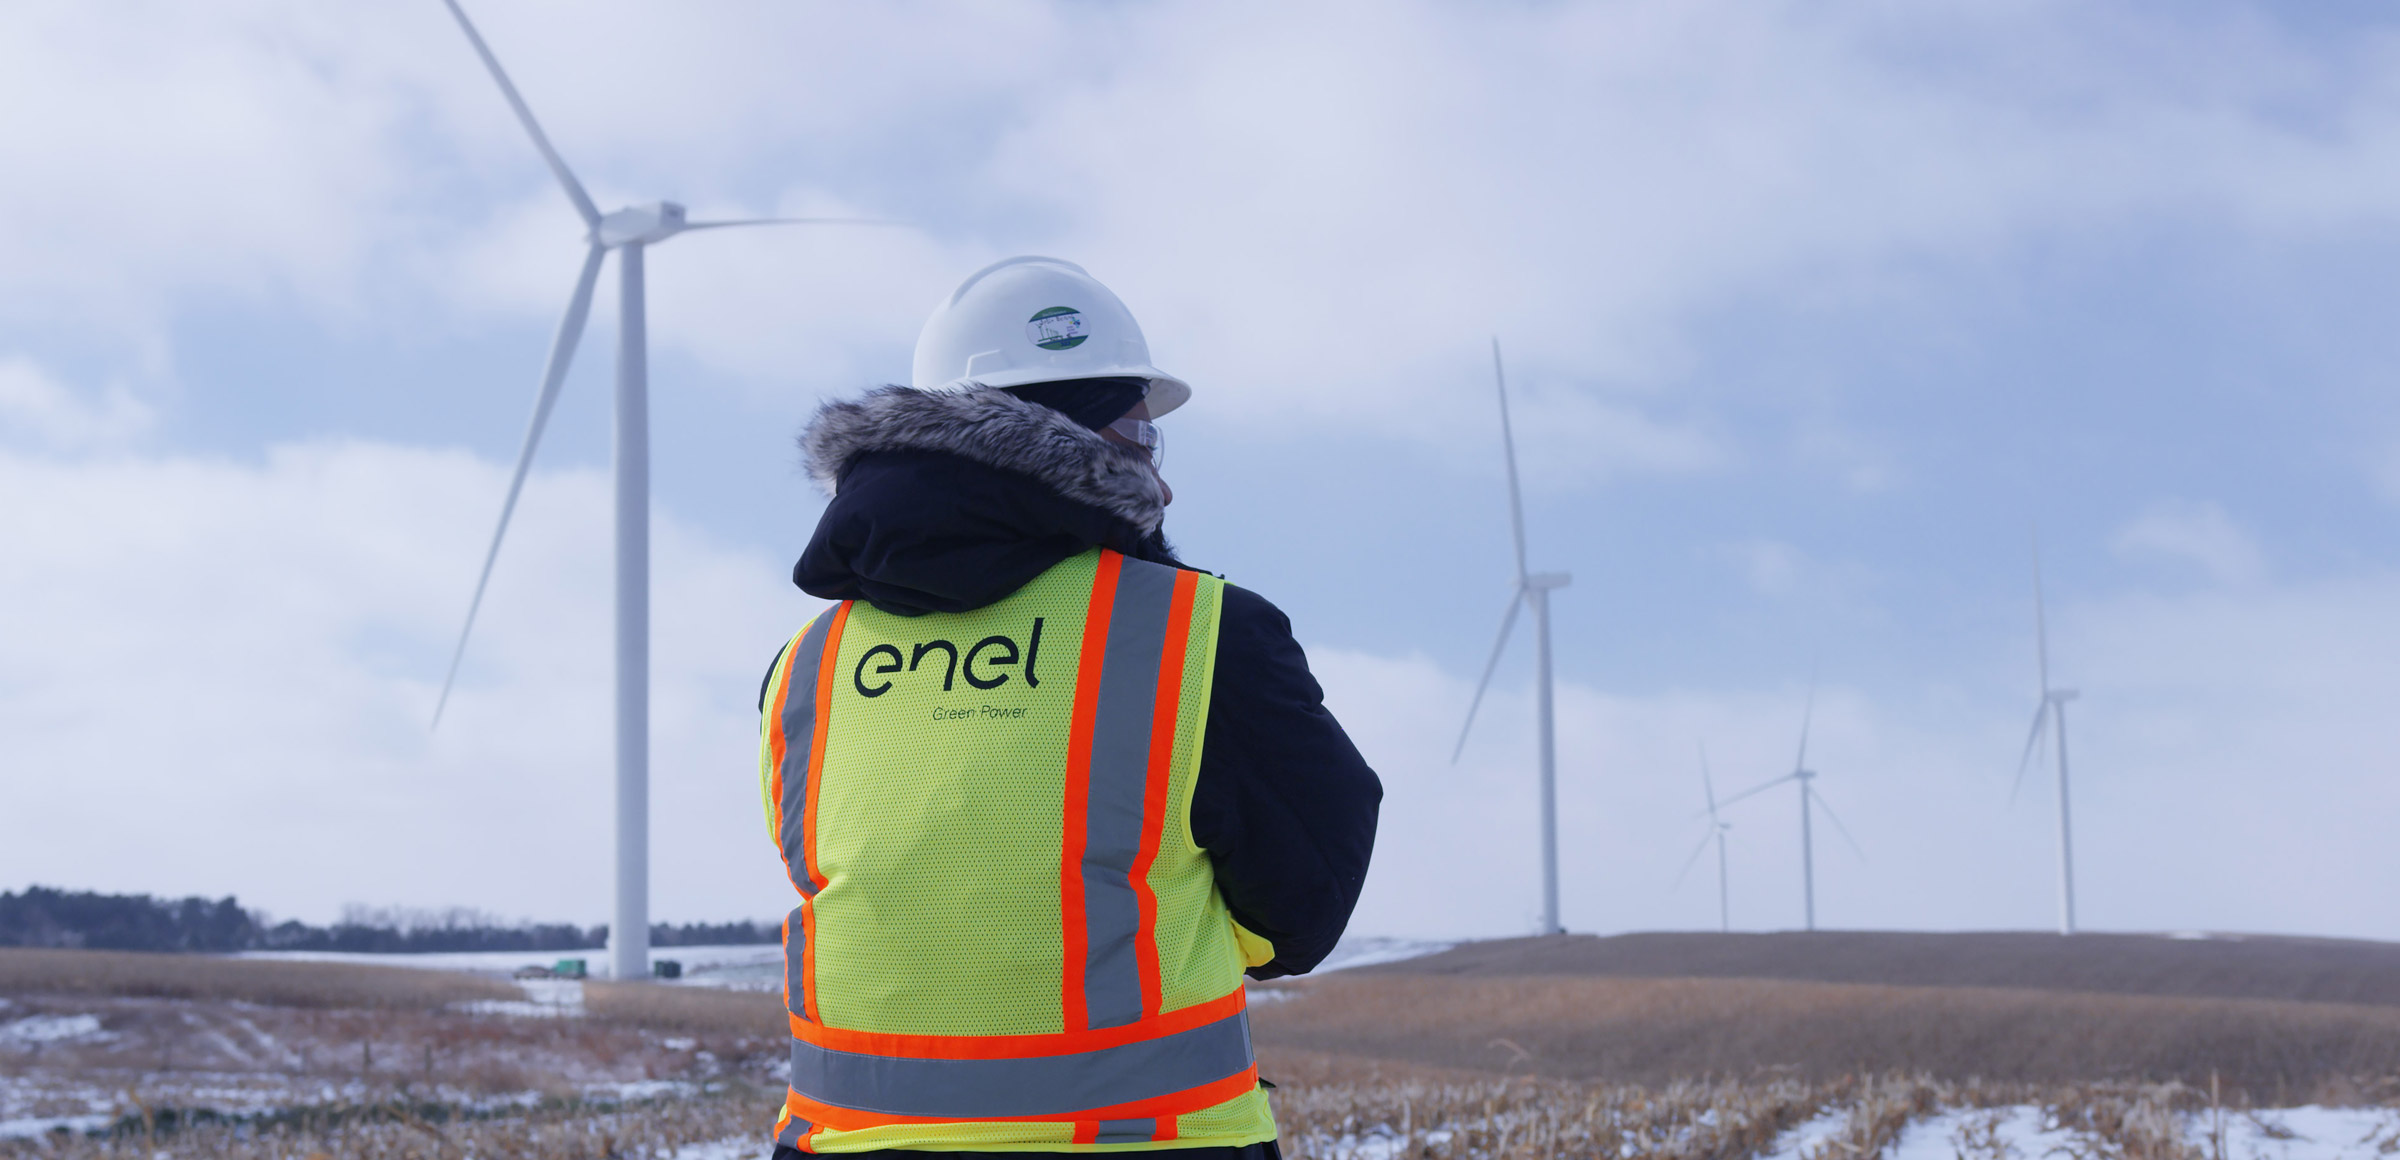 Empleado de Enel mira turbinas eólicas